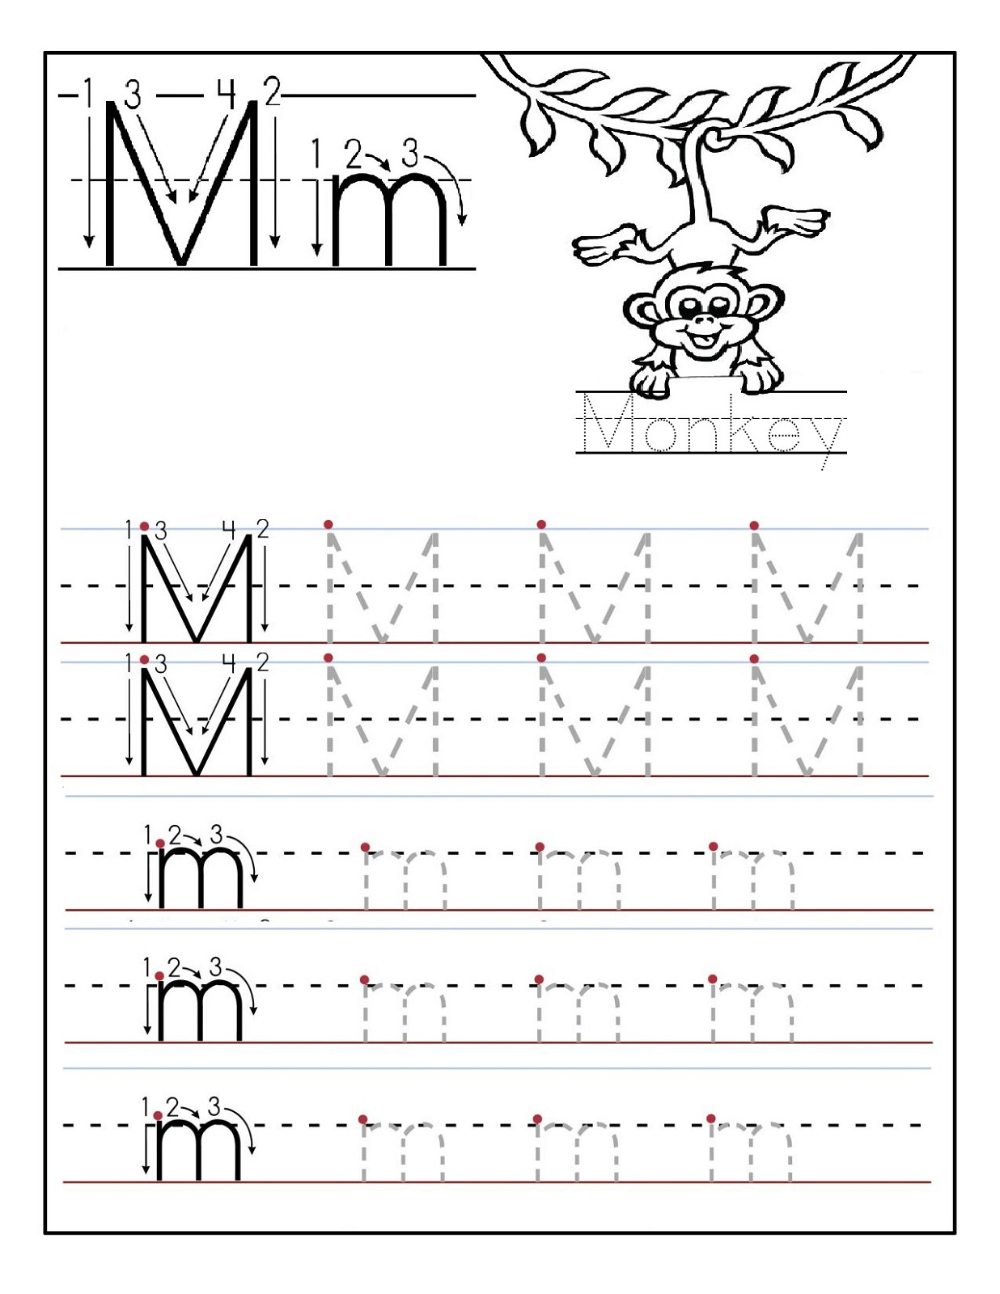 Preschool Printable Worksheets Free Alphabet Tracing Worksheets